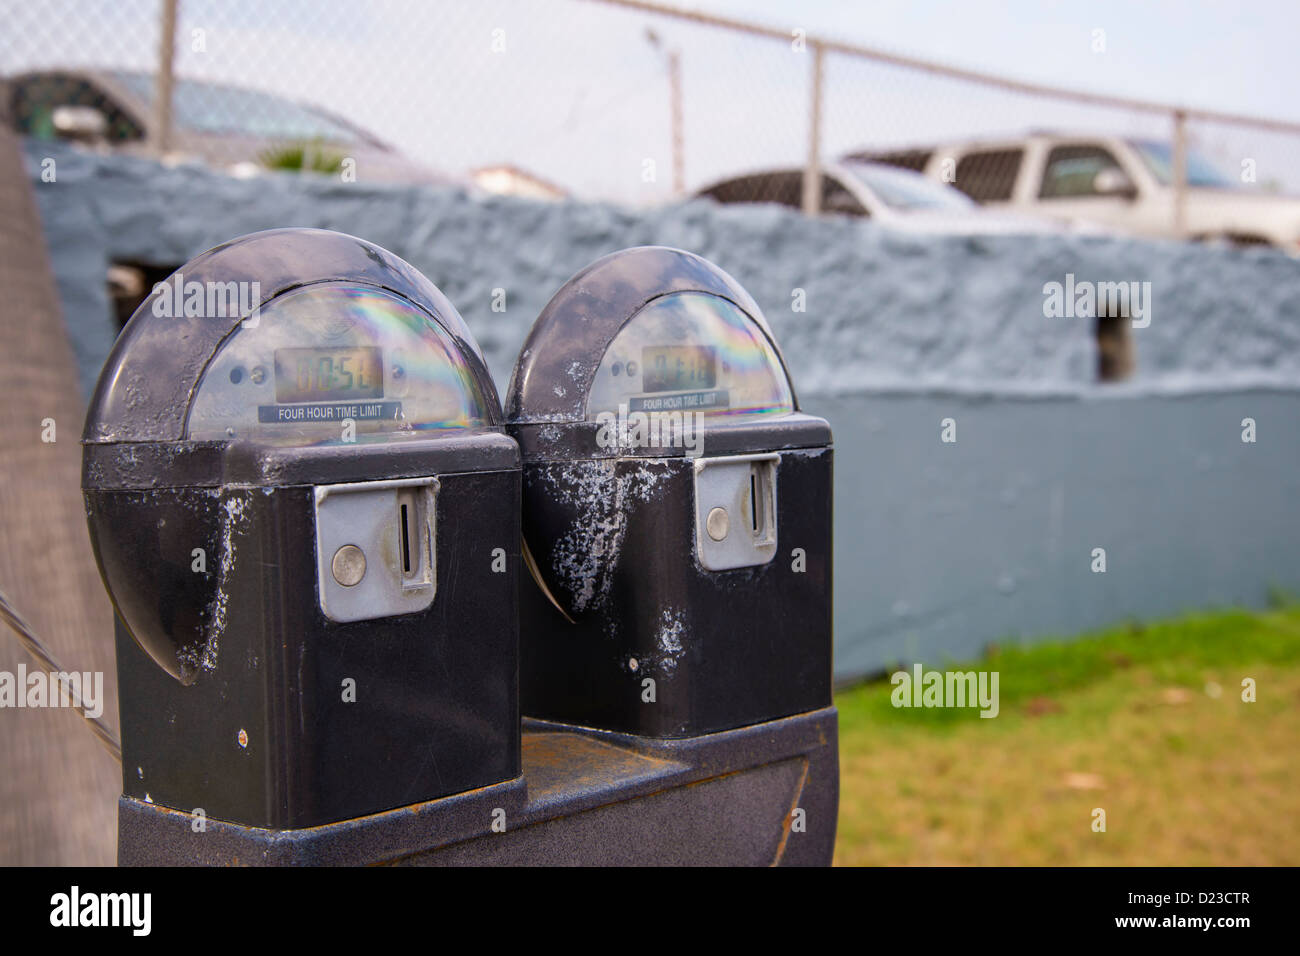 Parking meter, Corpus Christi, Texas, USA Stock Photo